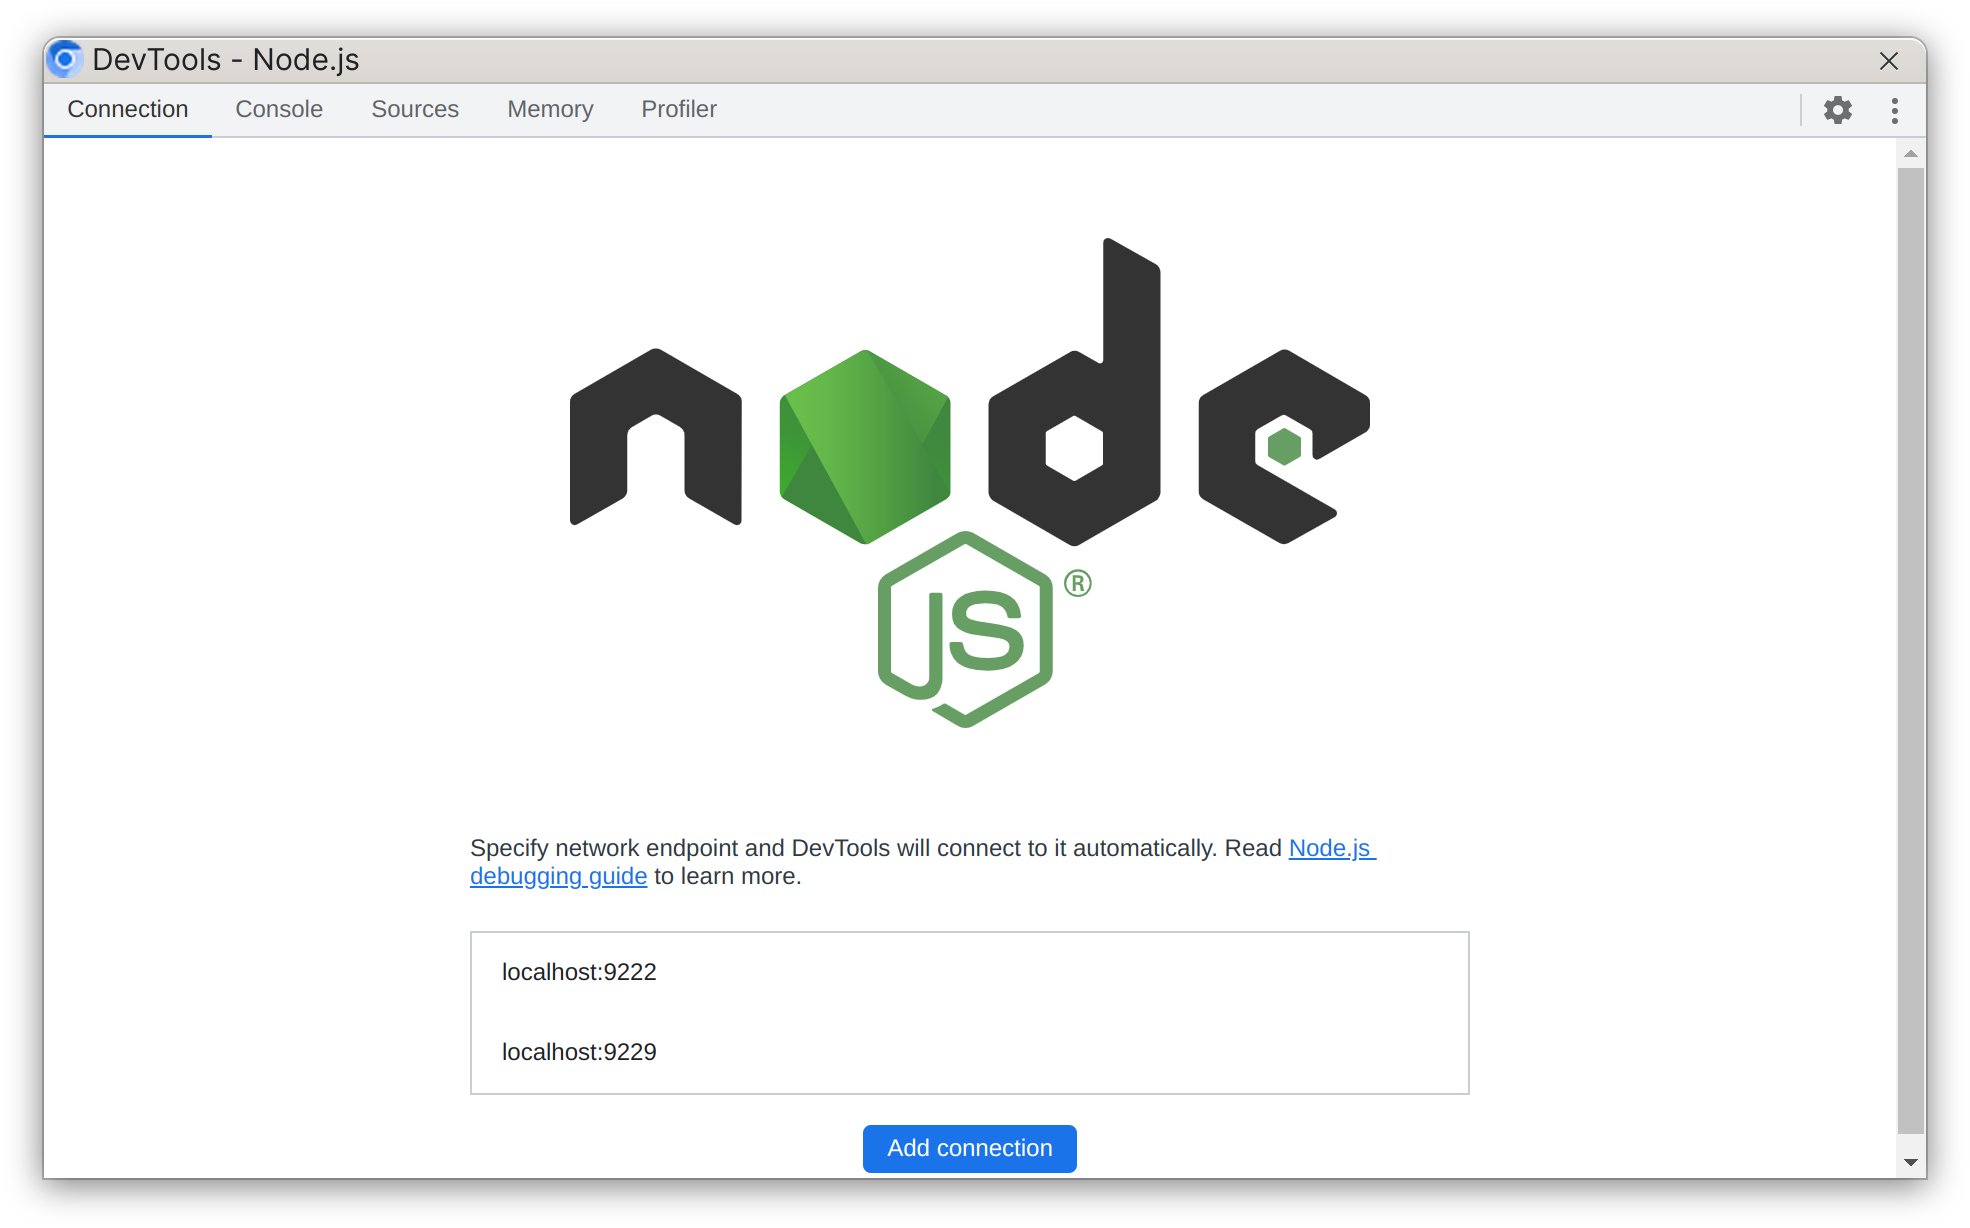 Node.js dedicated DevTools